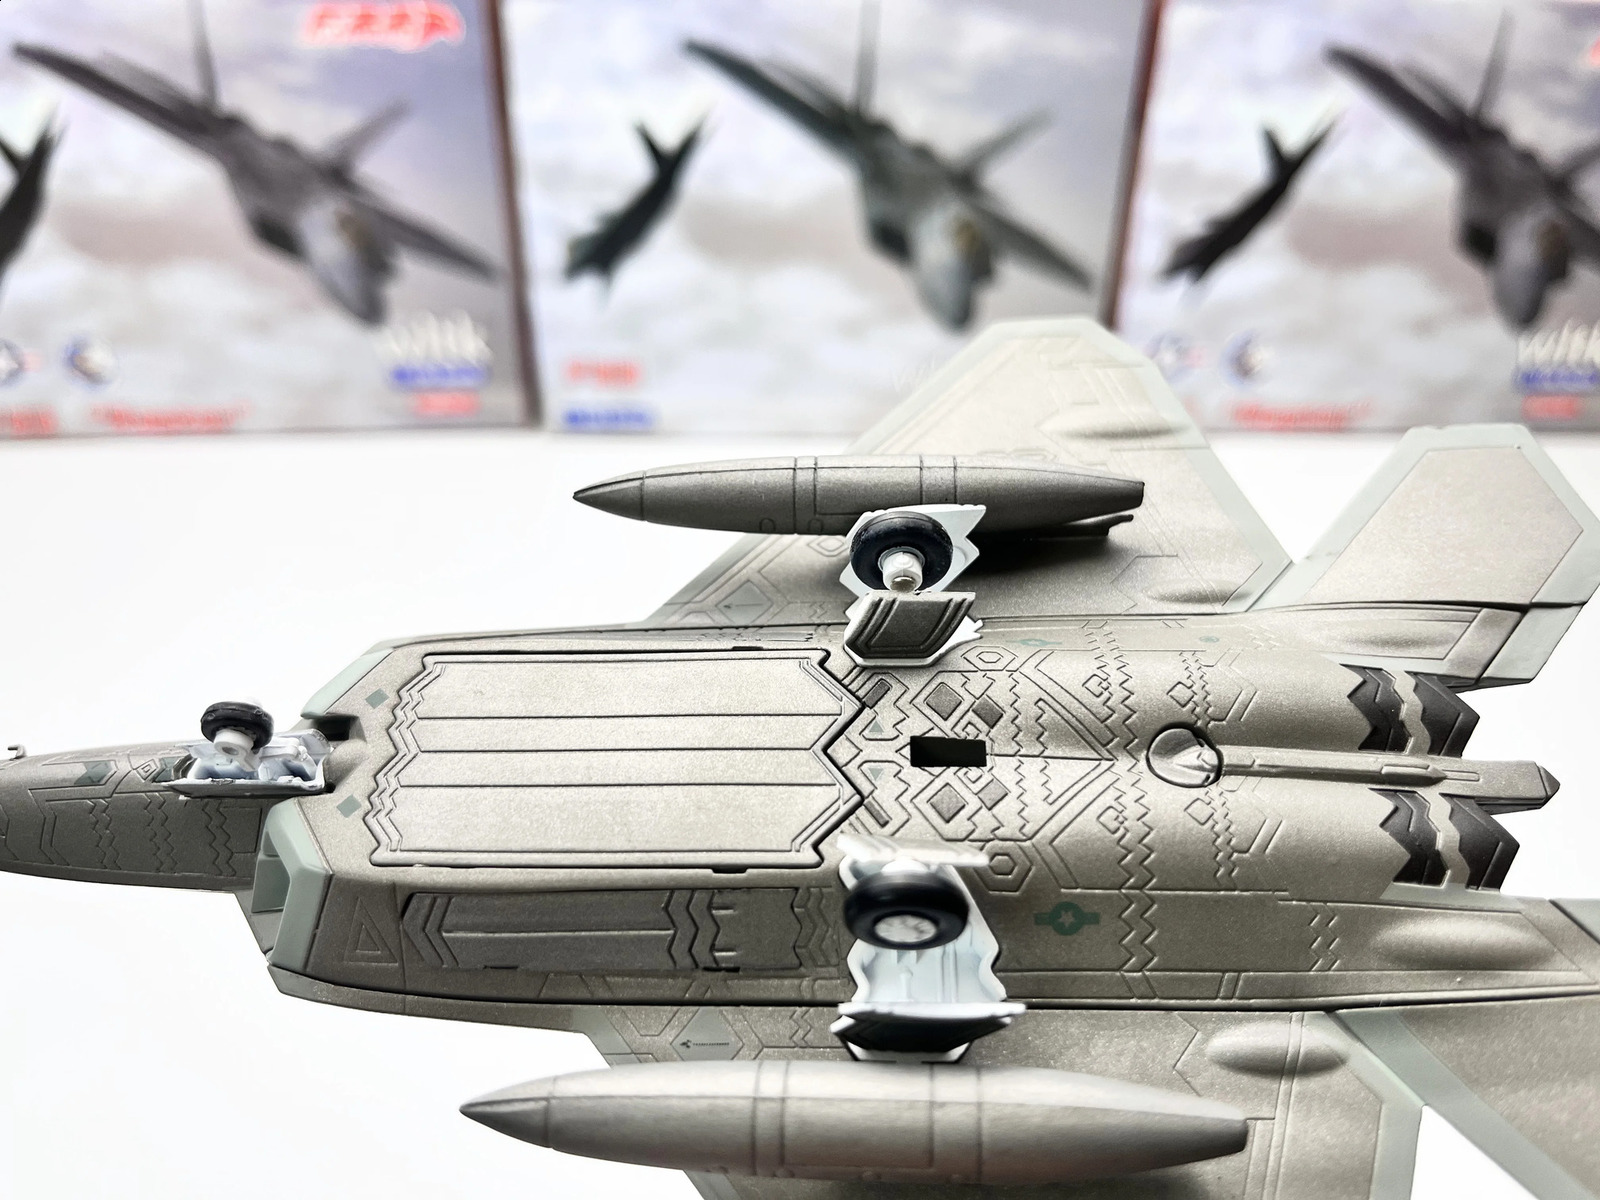 Модель самолета масштаб 1100 Модель истребителя США F22 Raptor Военная копия авиационного самолета времен мировой войны Коллекционная игрушка для мальчика 231118